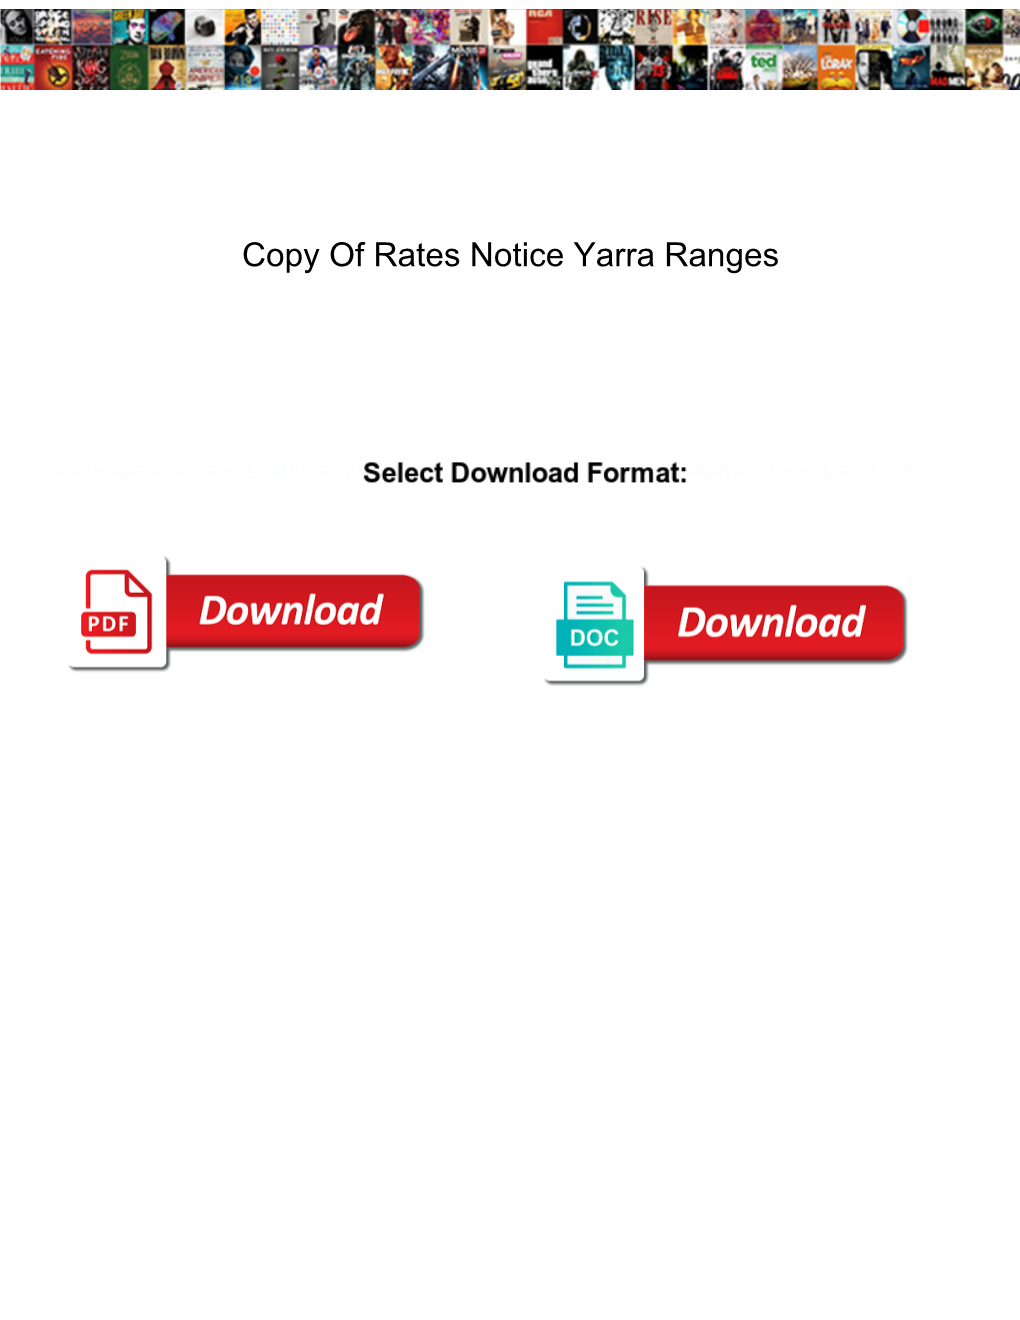 Copy of Rates Notice Yarra Ranges